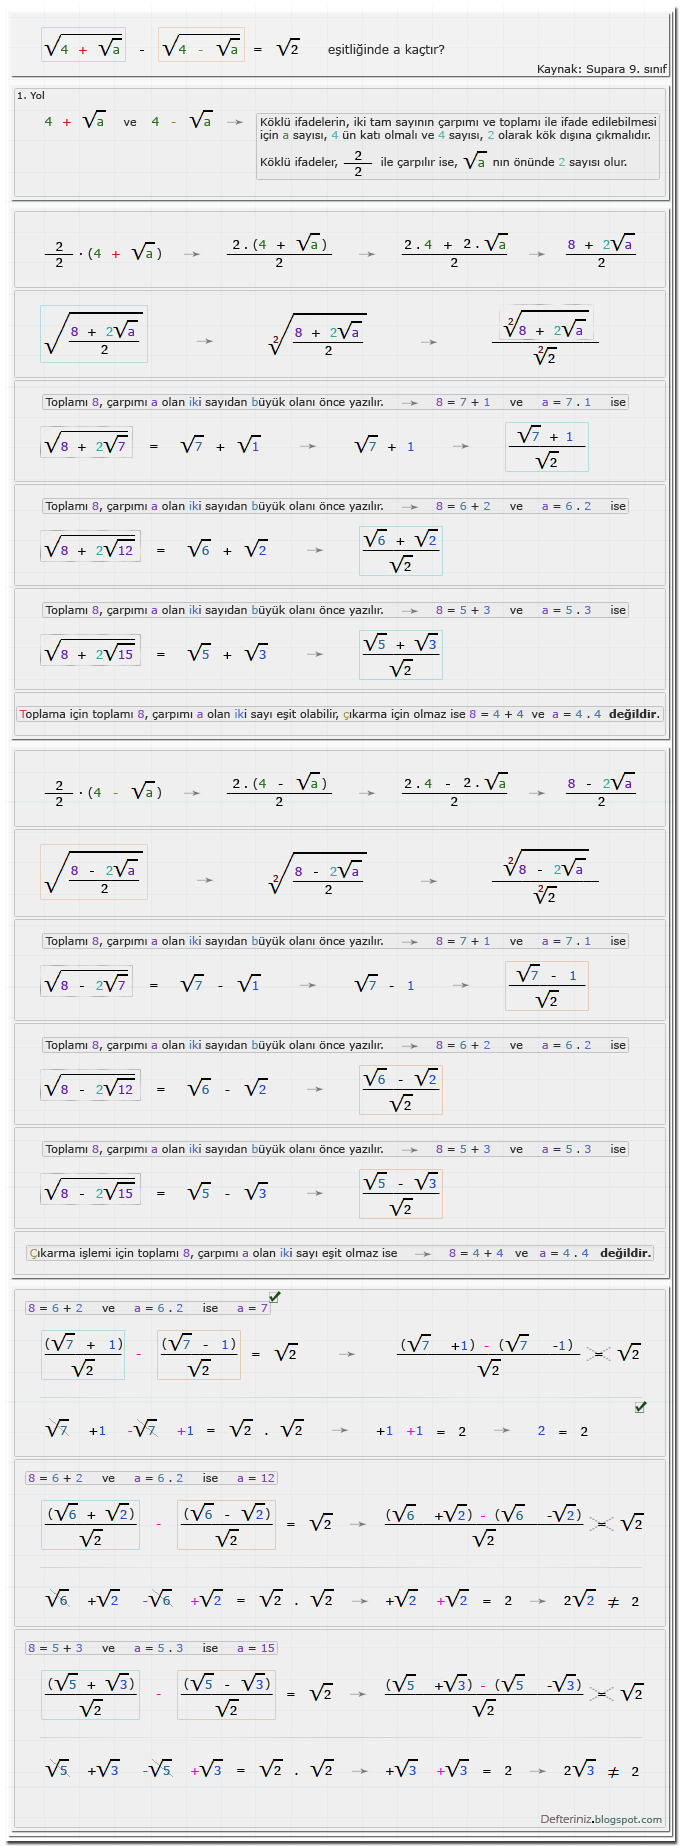 Örnek Soru - 12 » 1. Yol (2/2 ile çarpmak) » İki tam sayının toplamı ve çarpımı ile ifade edilebilen köklü eşitlikler » Köklü ifadeler içeren denklemler (Kaynak: Supara 9. sınıf).